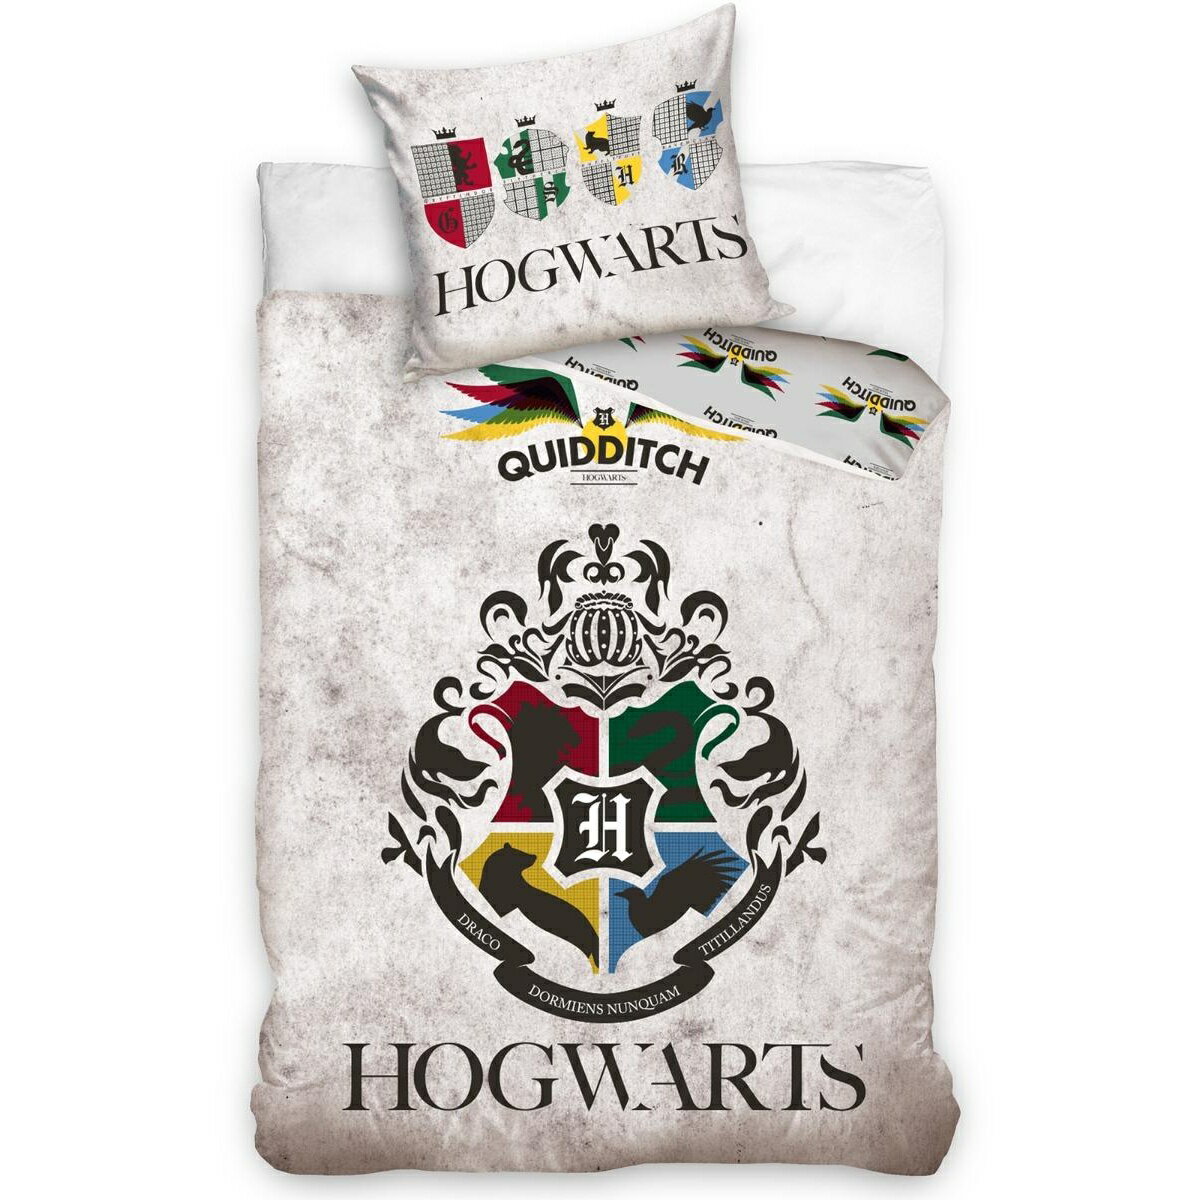 (ハリー・ポッター) Harry Potter オフィシャル商品 キッズ・子供 クィディッチ 掛け布団カバー・枕カバー セット 